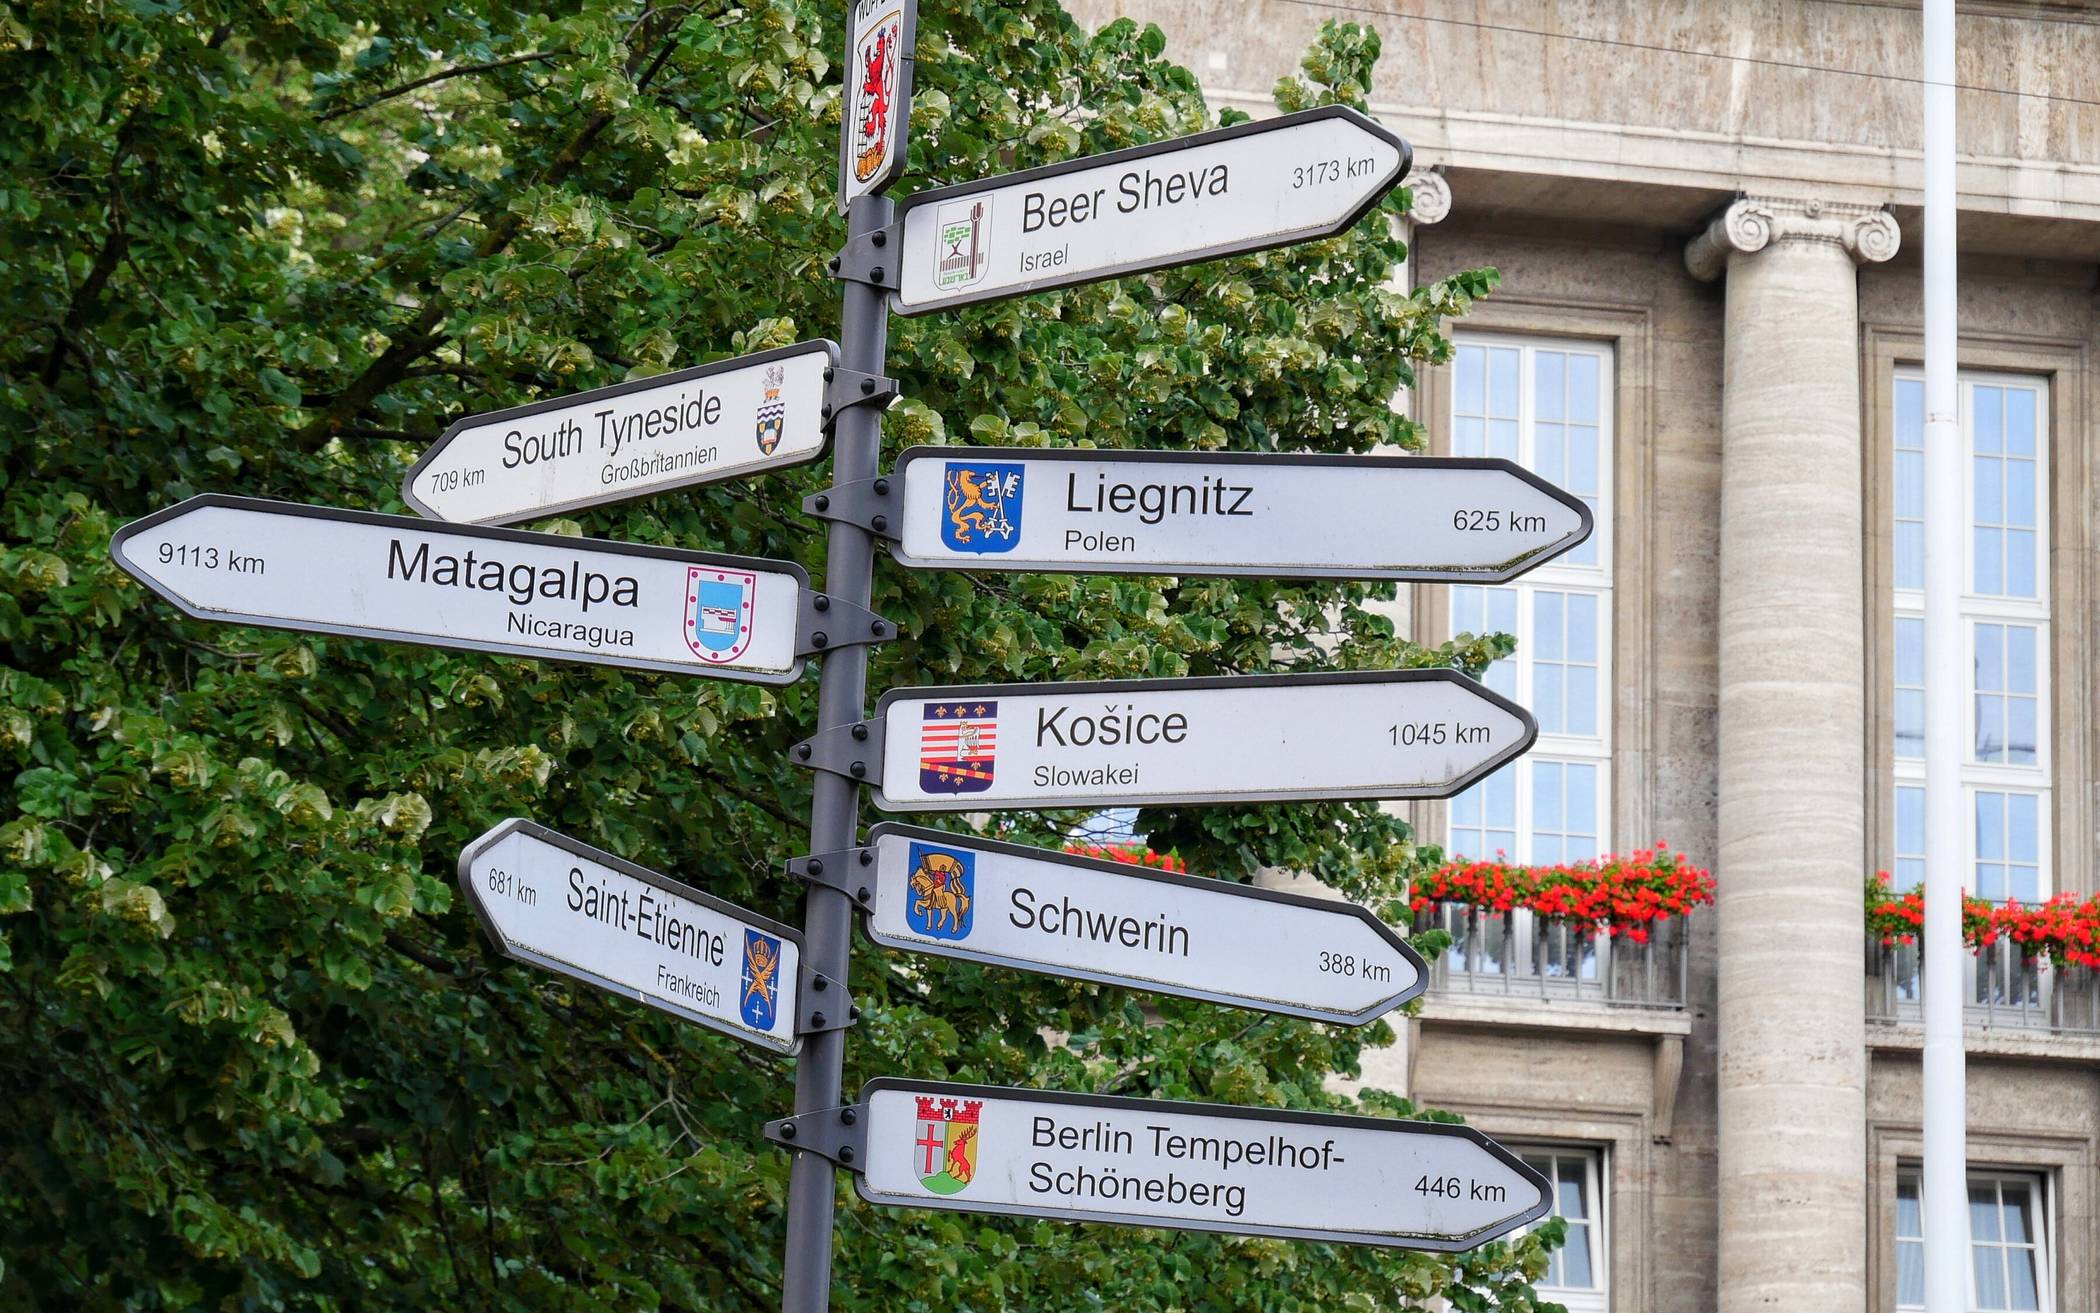  Wuppertals Partnerstädte und ihre Entfernungen sind auf dem Johannes-Rau-Platz vor dem Rathaus nachzulesen. 